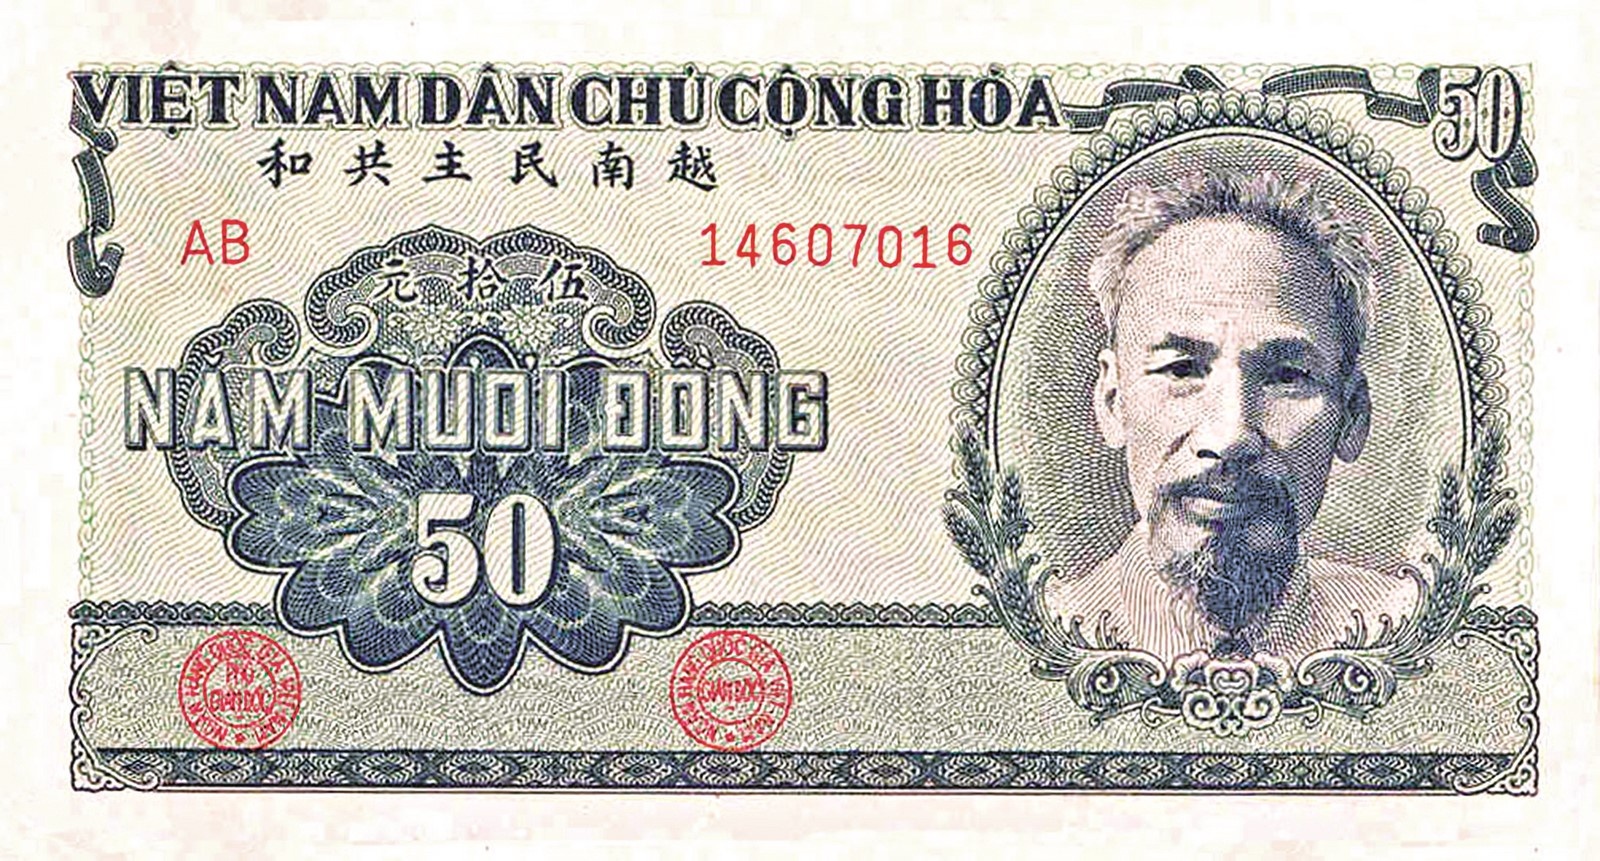 Đồng tiền Việt Nam mang theo một lịch sử dài và phong phú. Những đồng tiền này không chỉ cho chúng ta thấy sự phát triển của đất nước mà còn bắt nguồn từ các văn hóa và truyền thống đặc trưng. Hãy để hình ảnh giúp bạn khám phá những câu chuyện thú vị về đồng tiền Việt Nam.